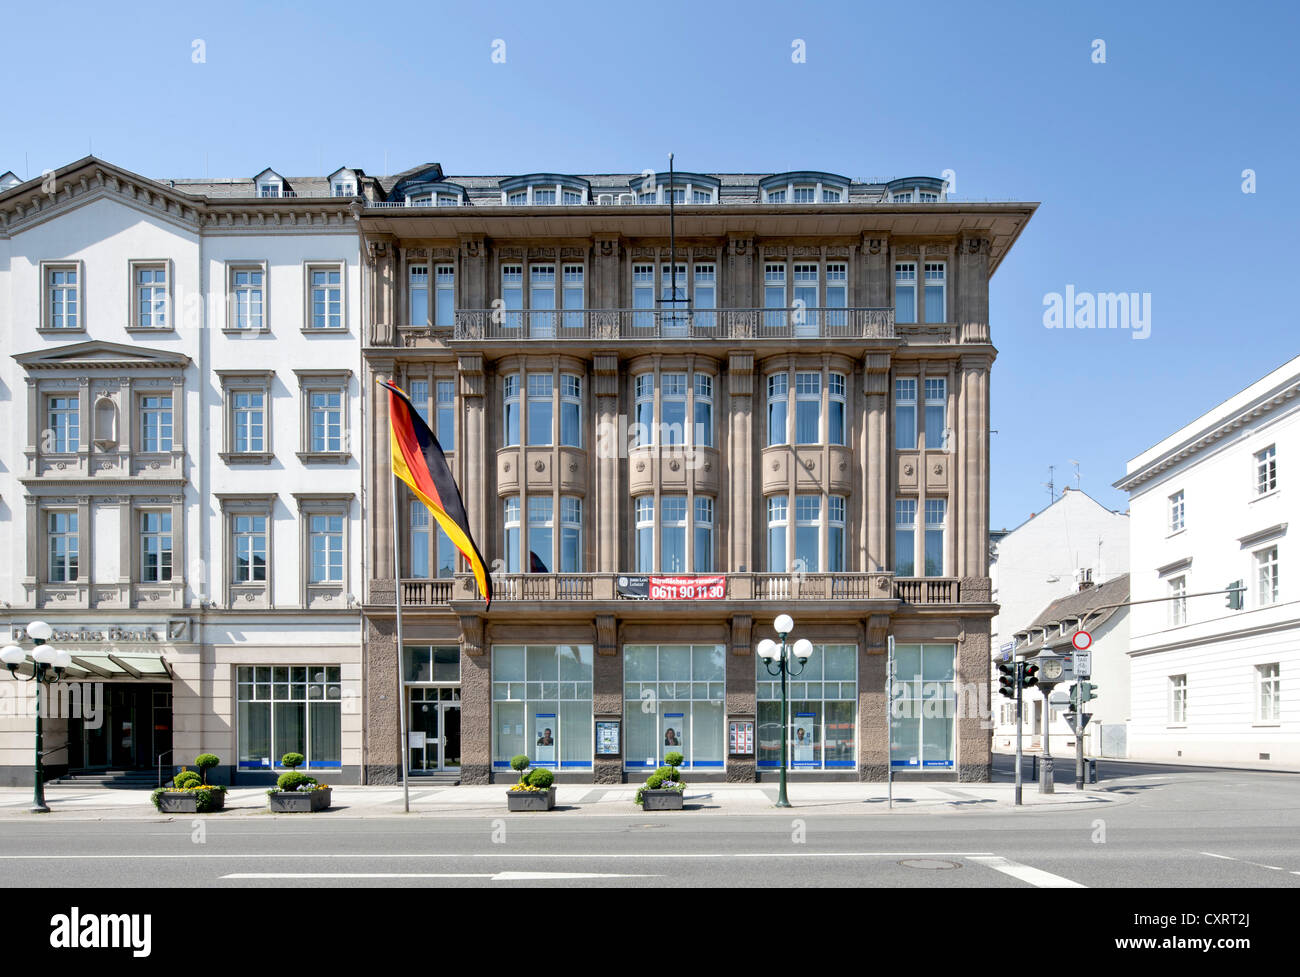 Oficinas y propiedades comerciales en Wilhelmstrasse, apodado Rue, Wiesbaden, Hesse, Alemania, Europa, PublicGround Foto de stock